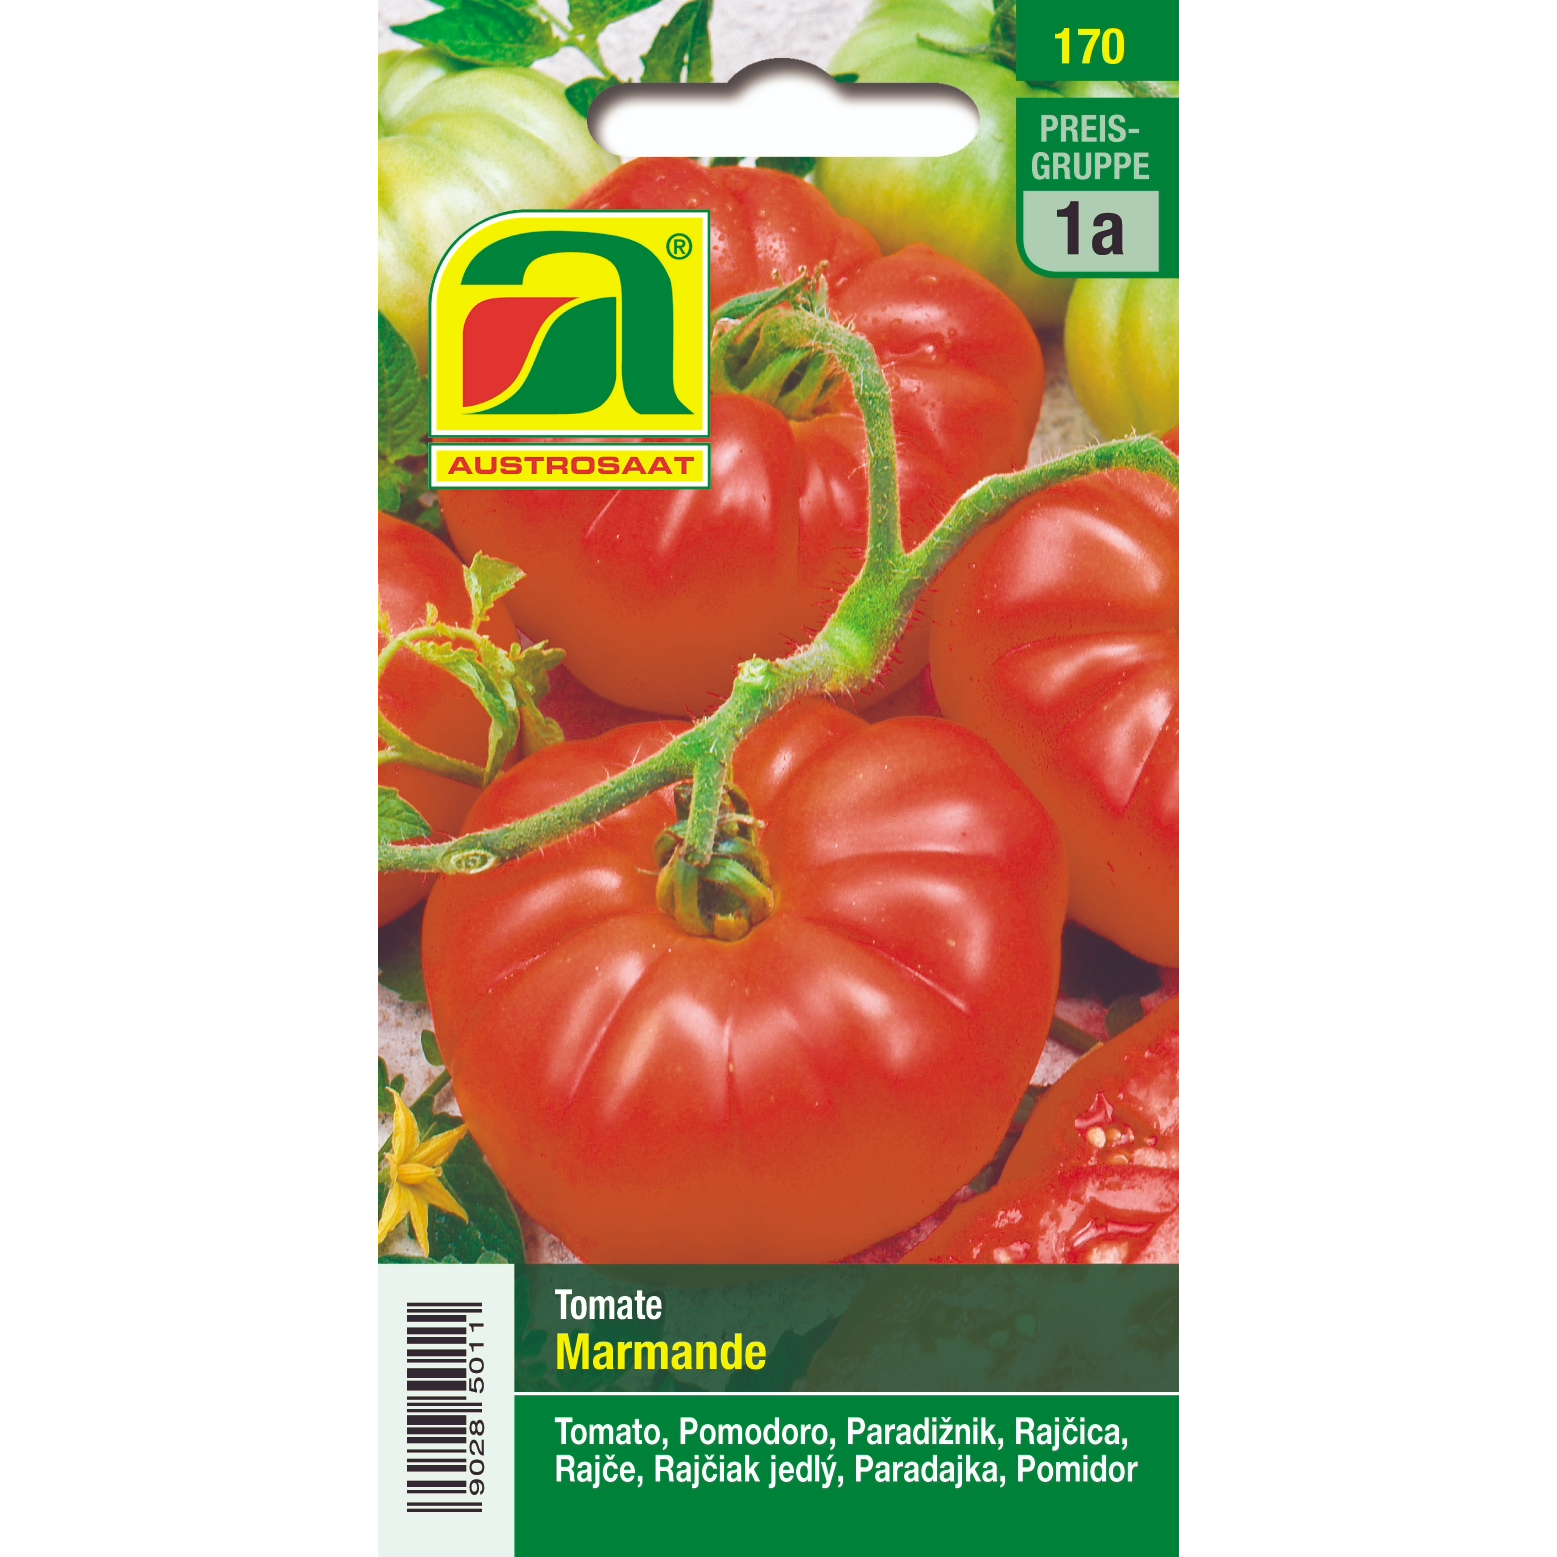 Austrosaat Tomato Marmande